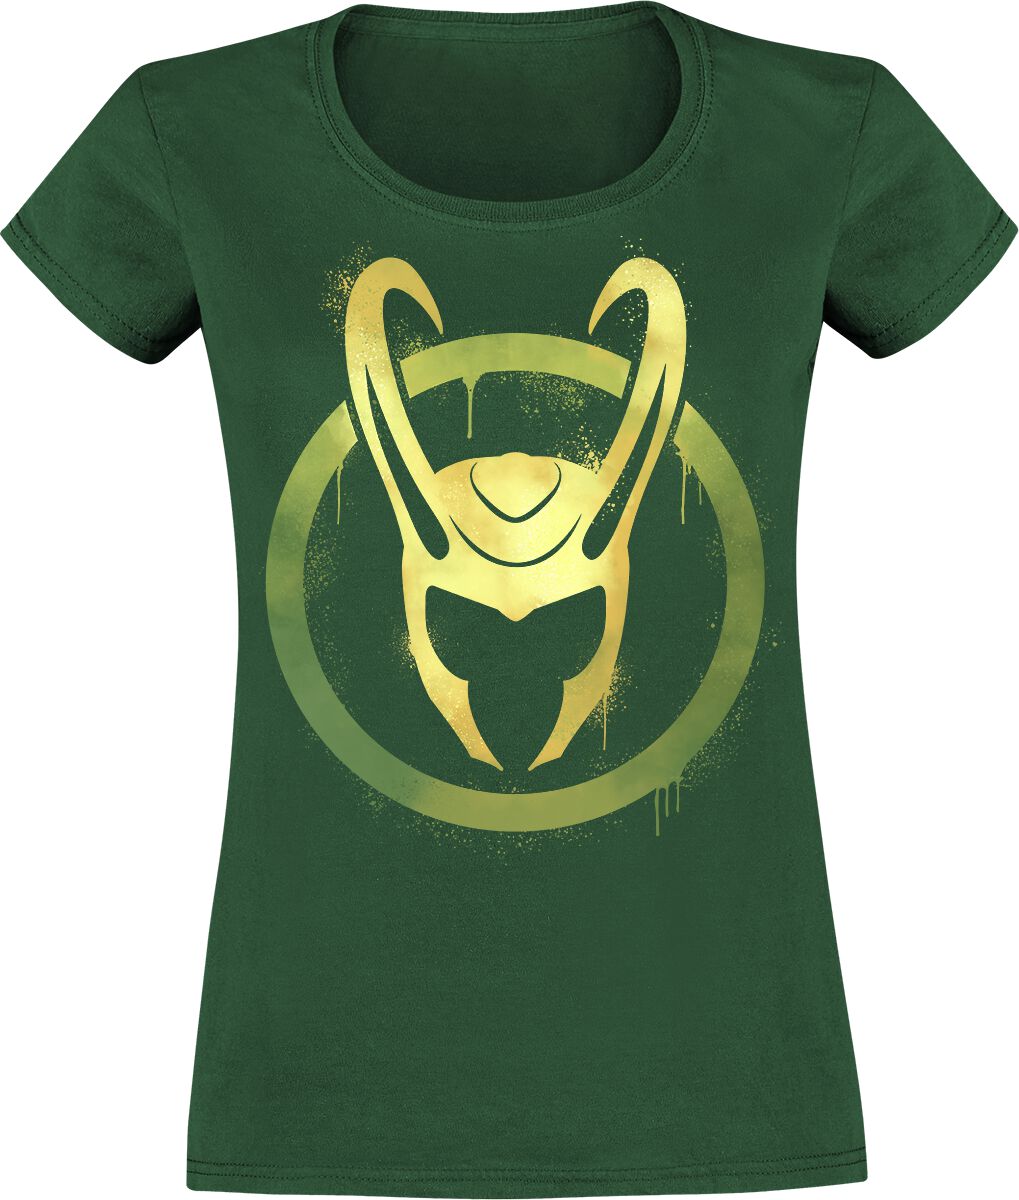 Loki Helmet T-Shirt bottle green